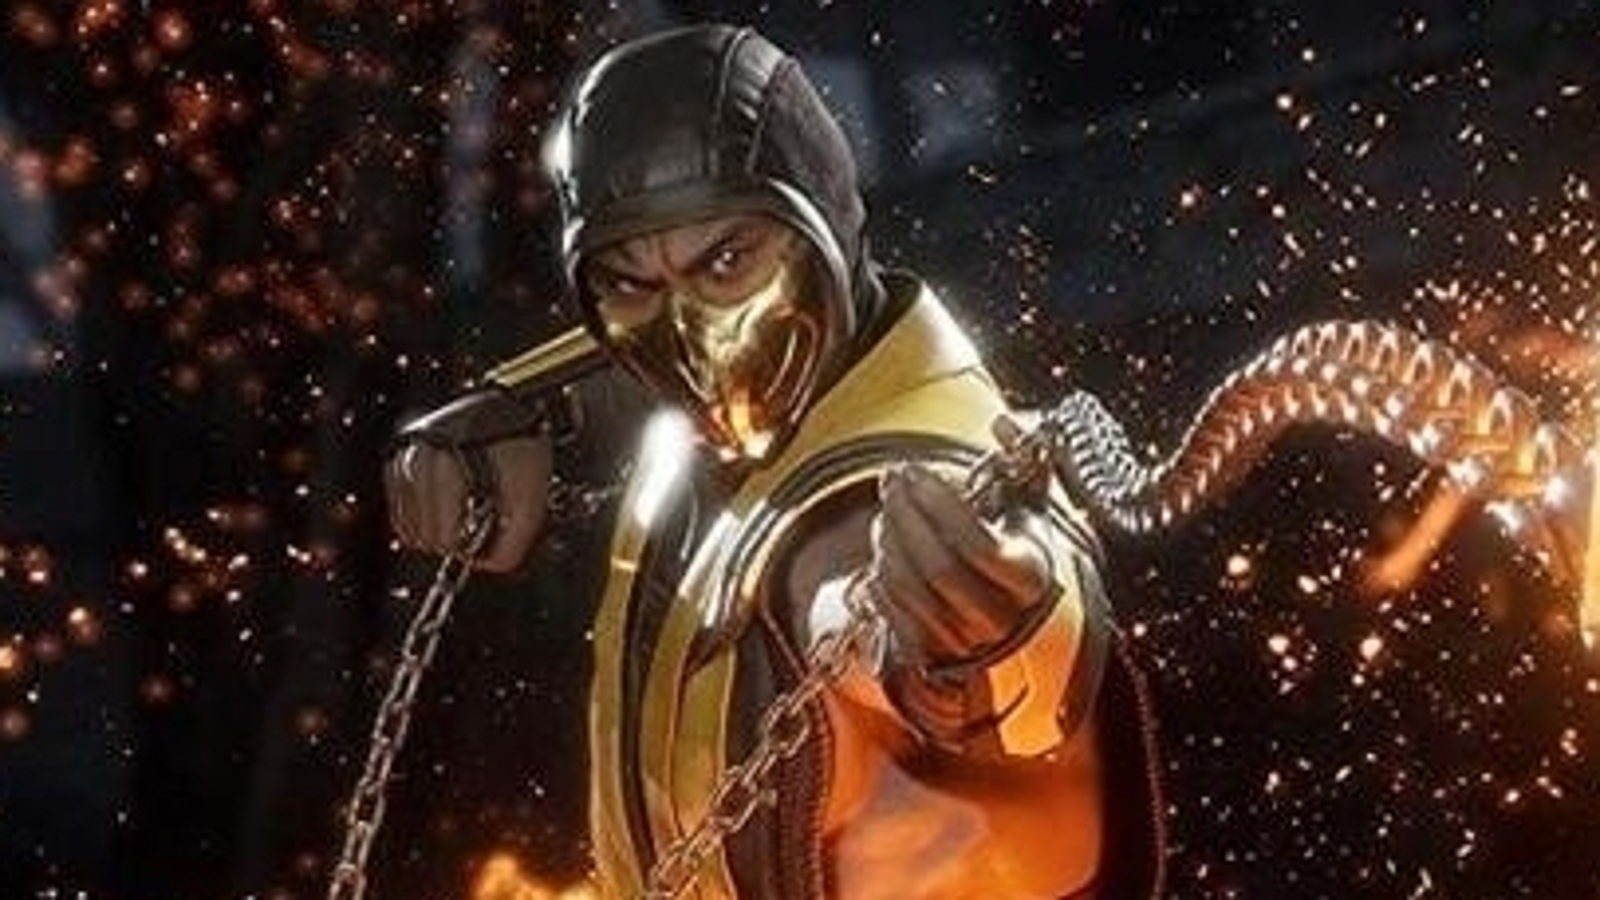 Torneio oficial de Mortal Kombat acontece em Las Vegas no mês de maio